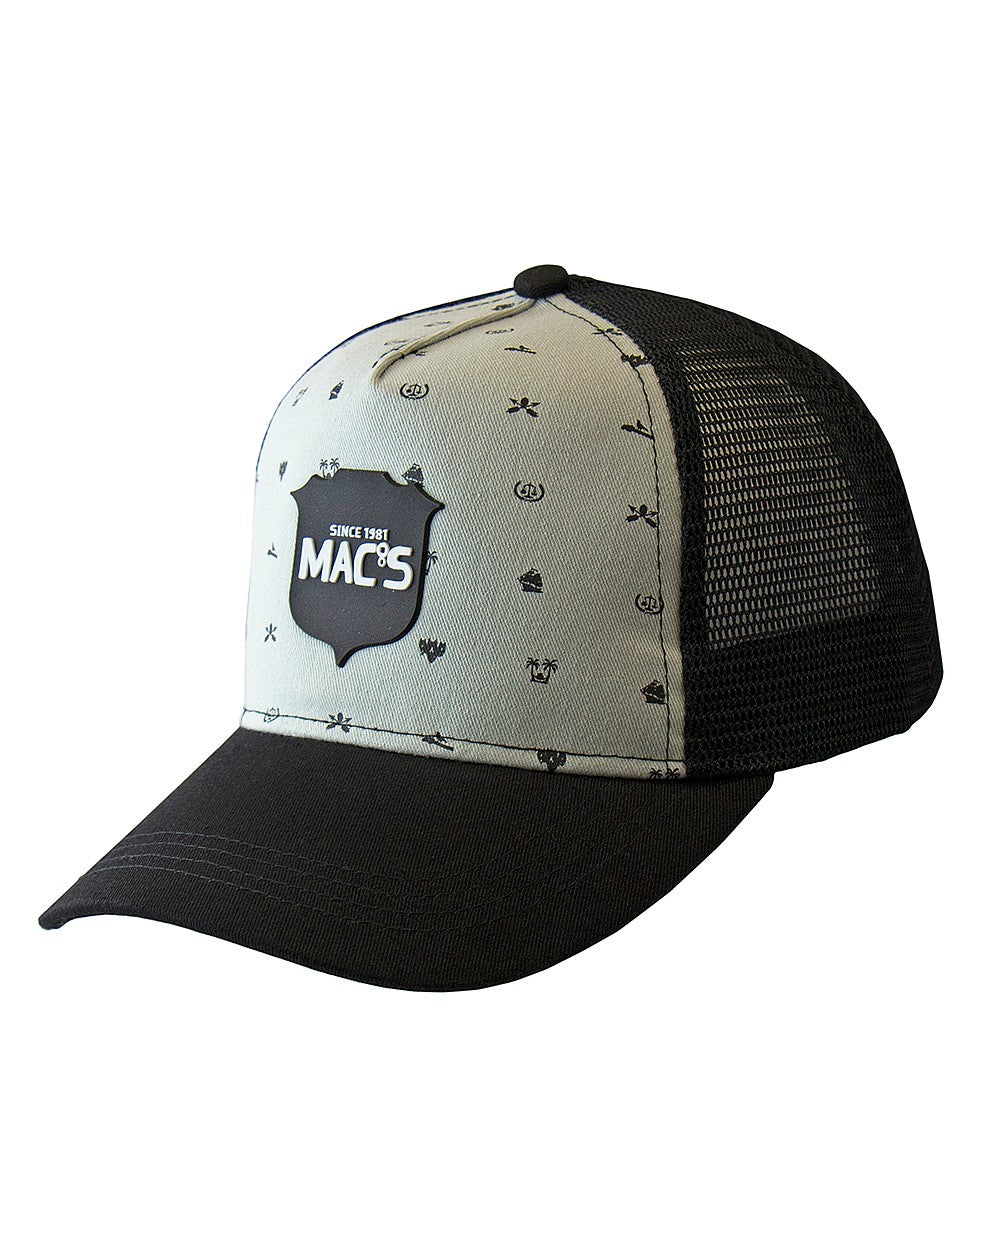 MAC's Gold Cap - Wear It Proud NZL